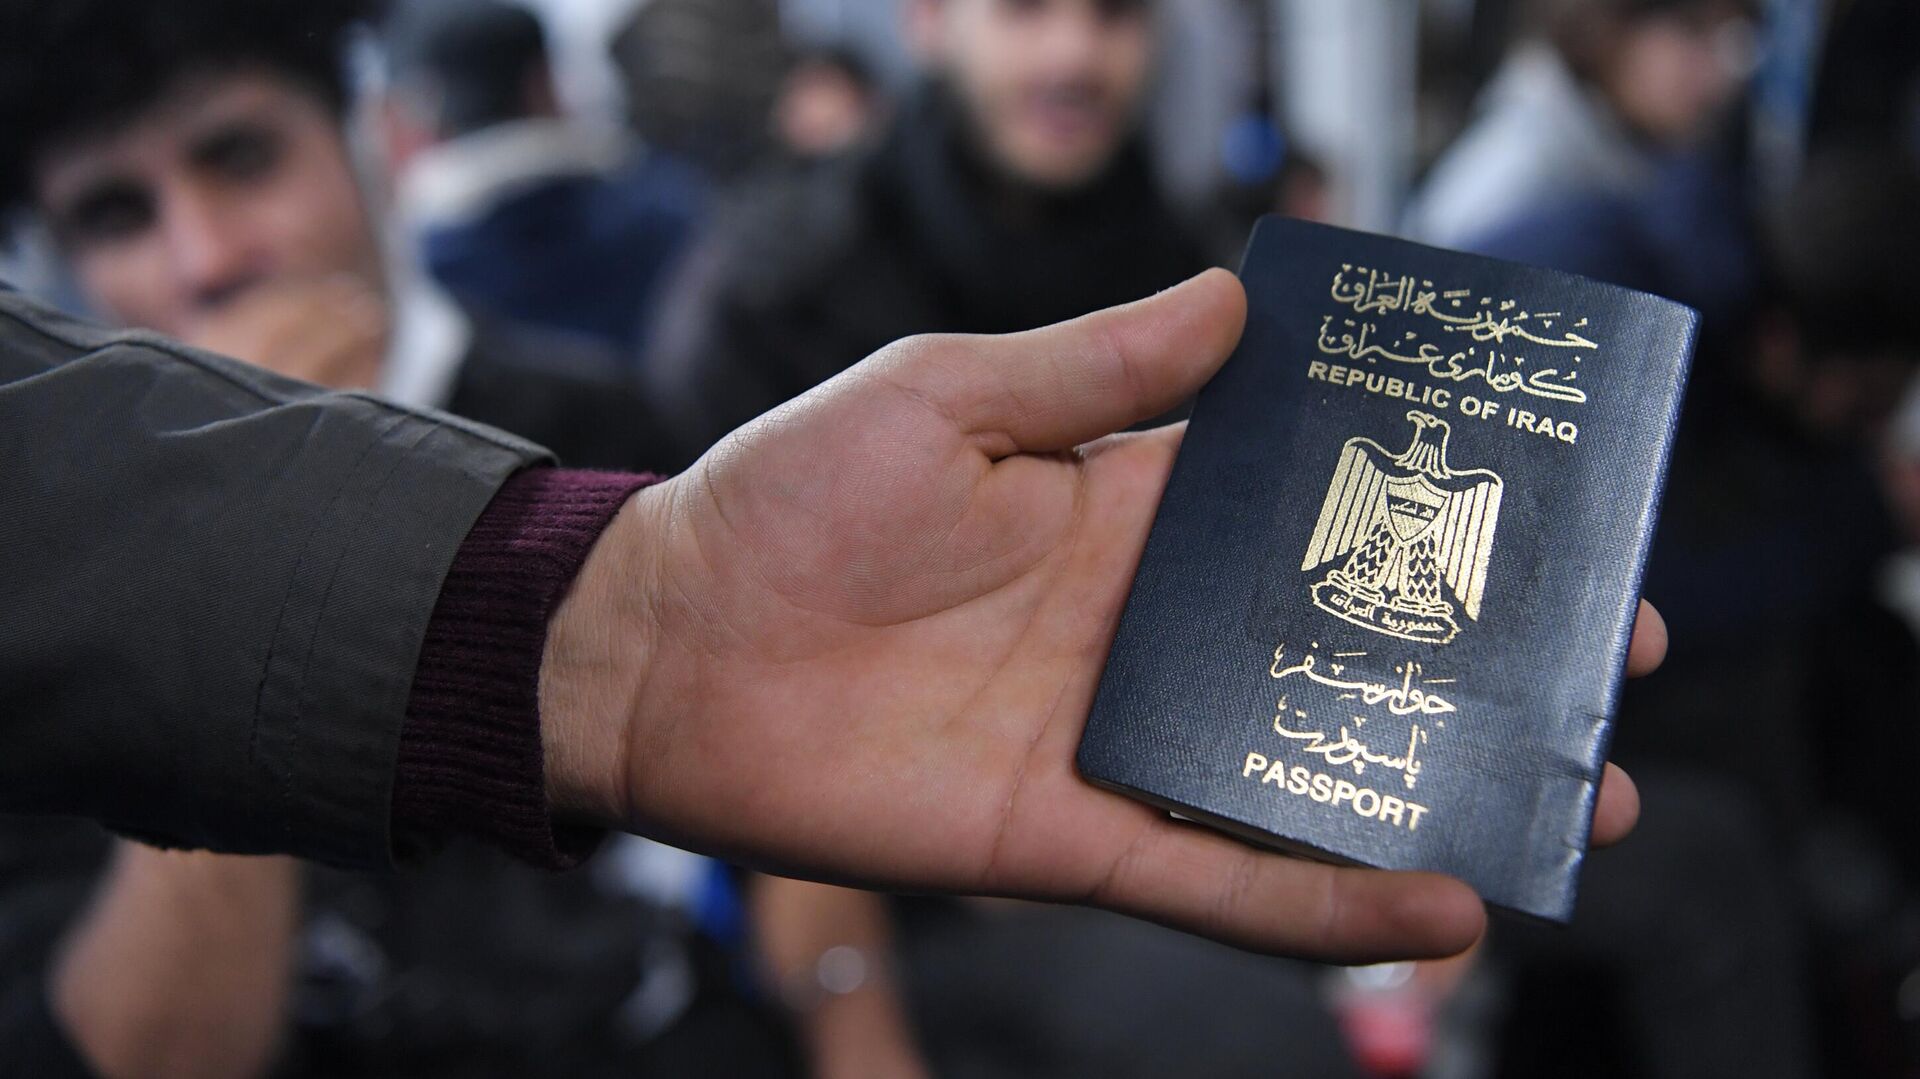 Иракский паспорт в руке одного из беженцев, ожидающих в международном аэропорту Минска вывозных рейсов авиакомпании Iraqi Airways - РИА Новости, 1920, 04.12.2021